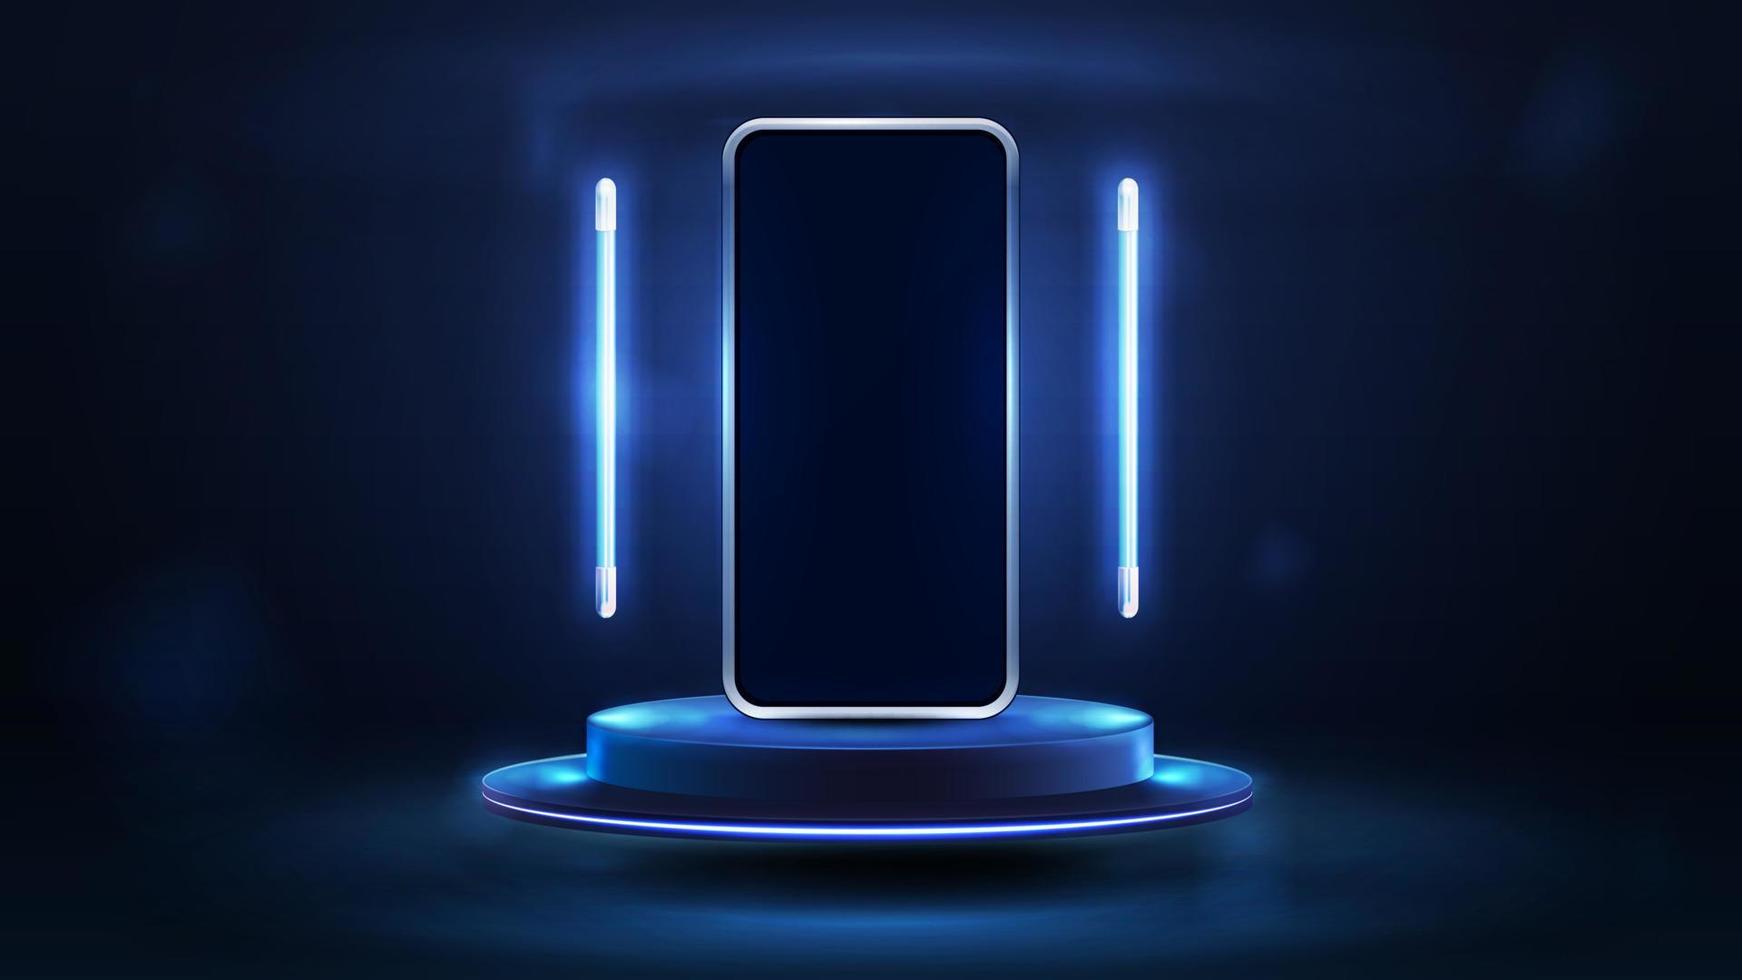 smartphone sur podium bleu flottant dans l'air dans une scène sombre avec des lampes de ligne volantes bleues autour, illustration vectorielle réaliste 3d. vecteur